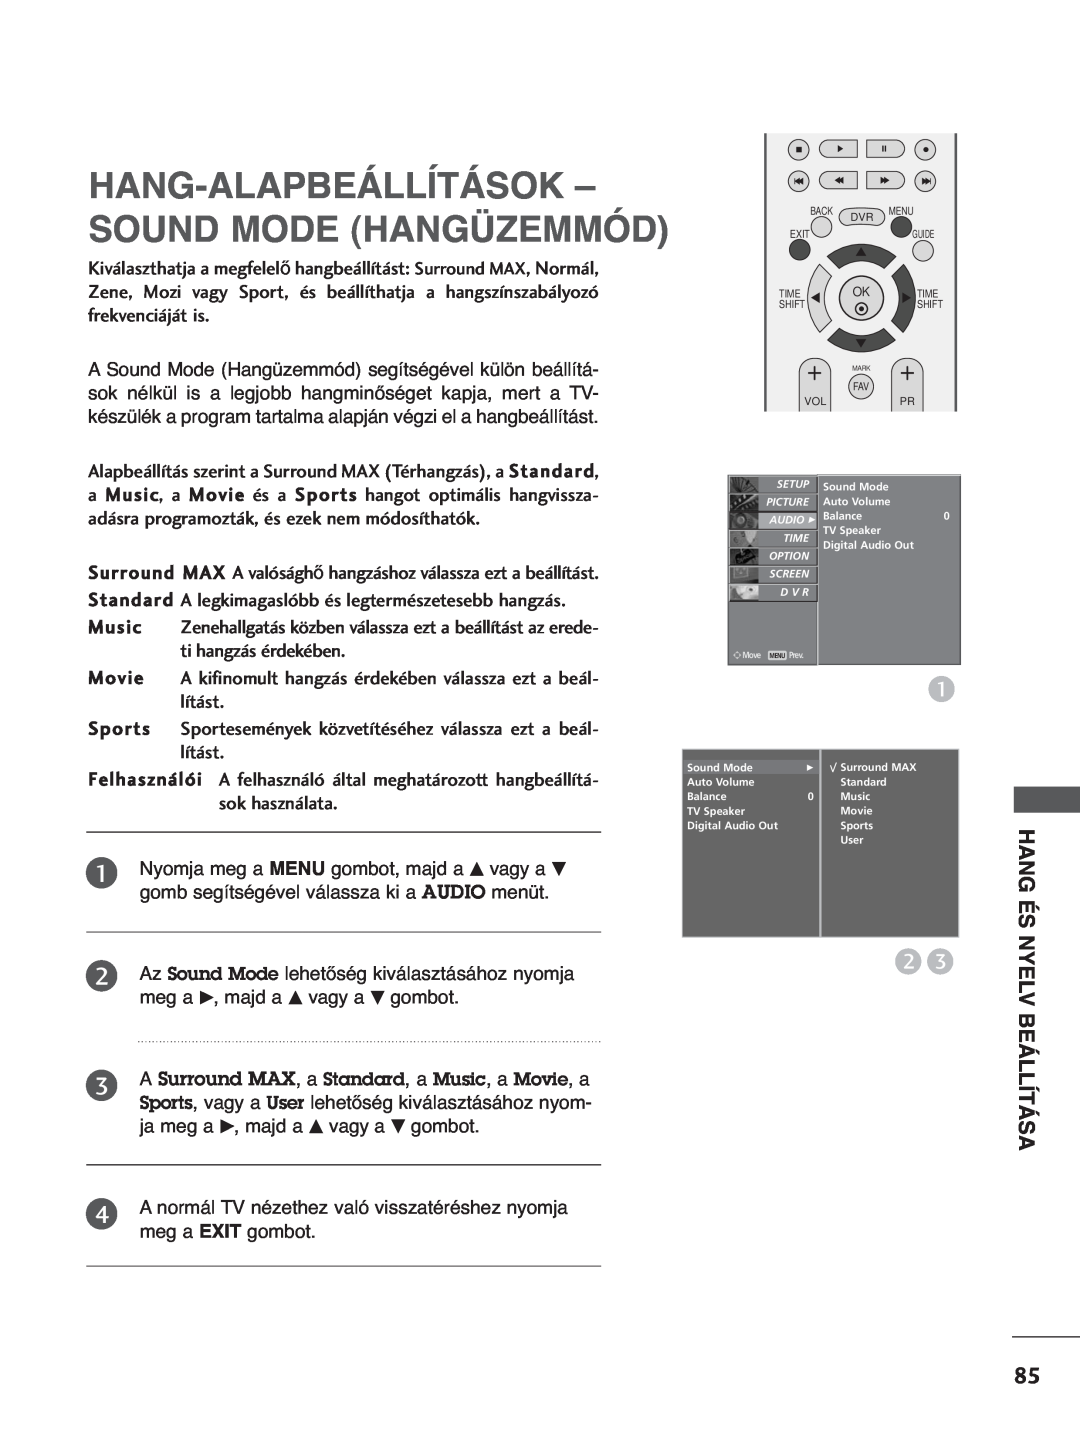 LG Electronics 5500PPTT88, 3377LLTT77, 3322LLTT77 Hang-Alapbeállítások - Sound Mode Hangüzemmód, Hang És, Nyelv, Beállítása 